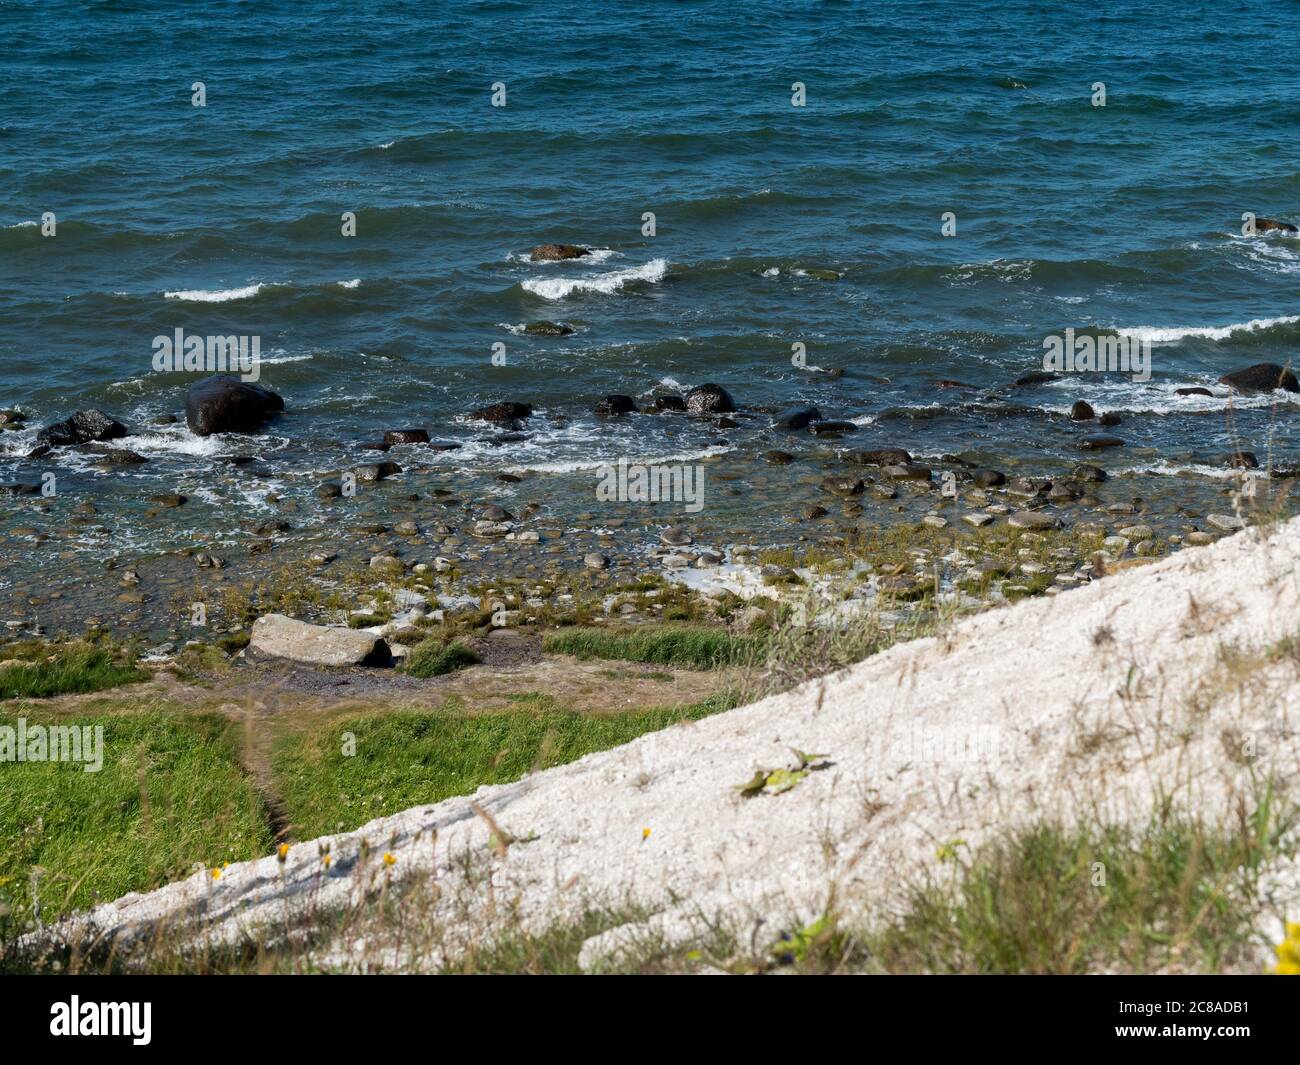 Steilküste am Kap Arkona auf der Insel Rügen Küste Strand Steinstrand Ostseeküste Ostsee Baltic Sea Coast Cape Arkona Deutschland Stock Photo